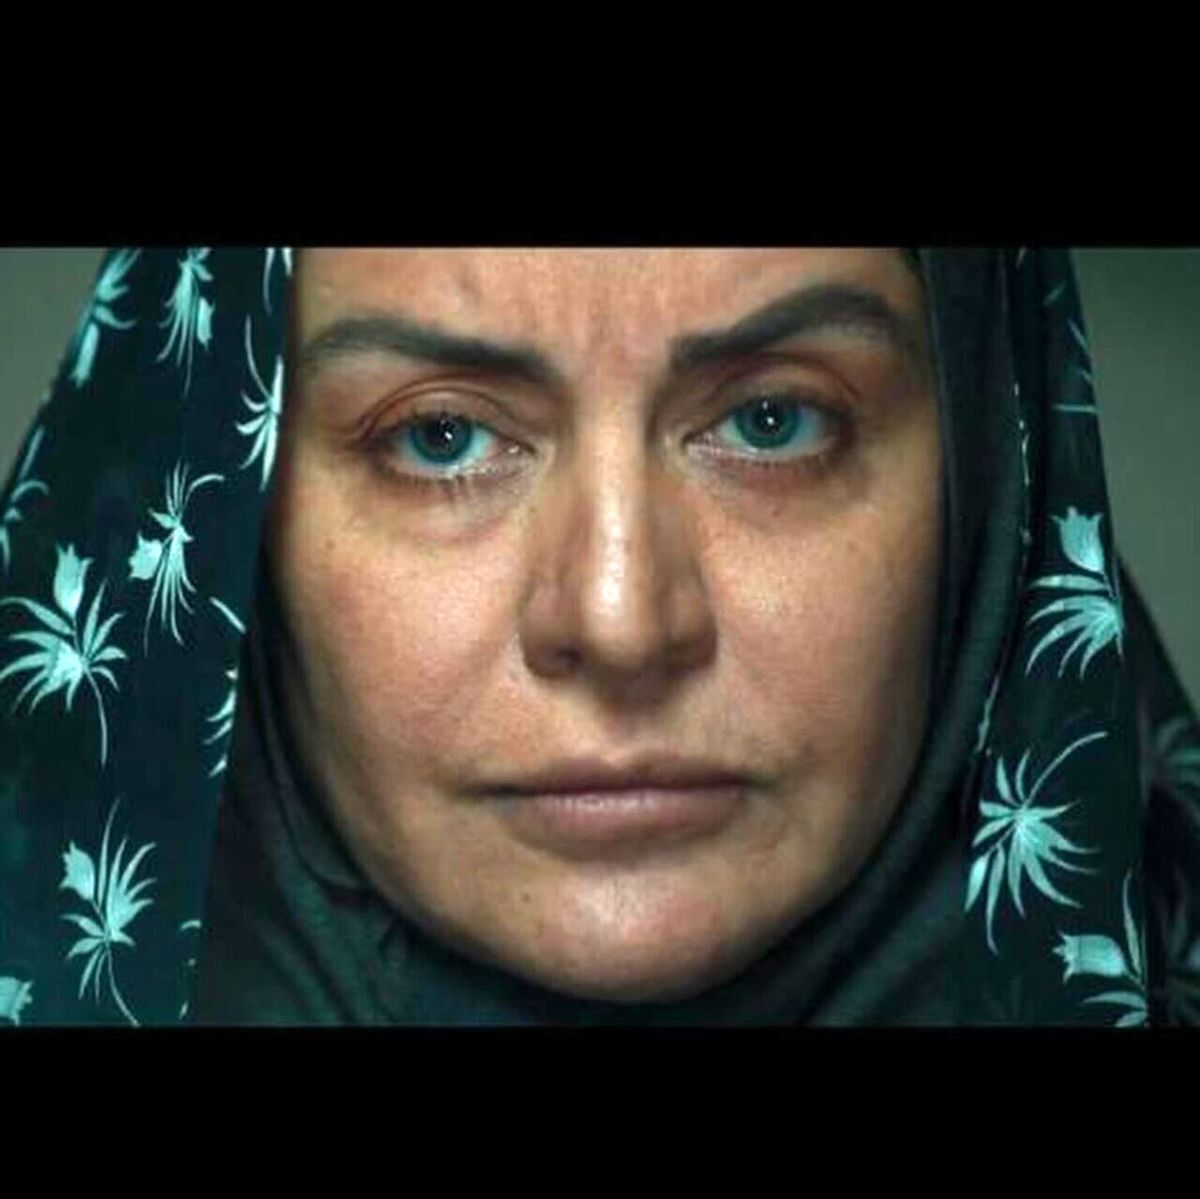 (فیلم) بازگویی تجاوز به مریلا زارعی در دوران کودکی اش در سکانسی از سریال افعی تهران / از حسش می تونی دردی که کشیده رو بفهمی